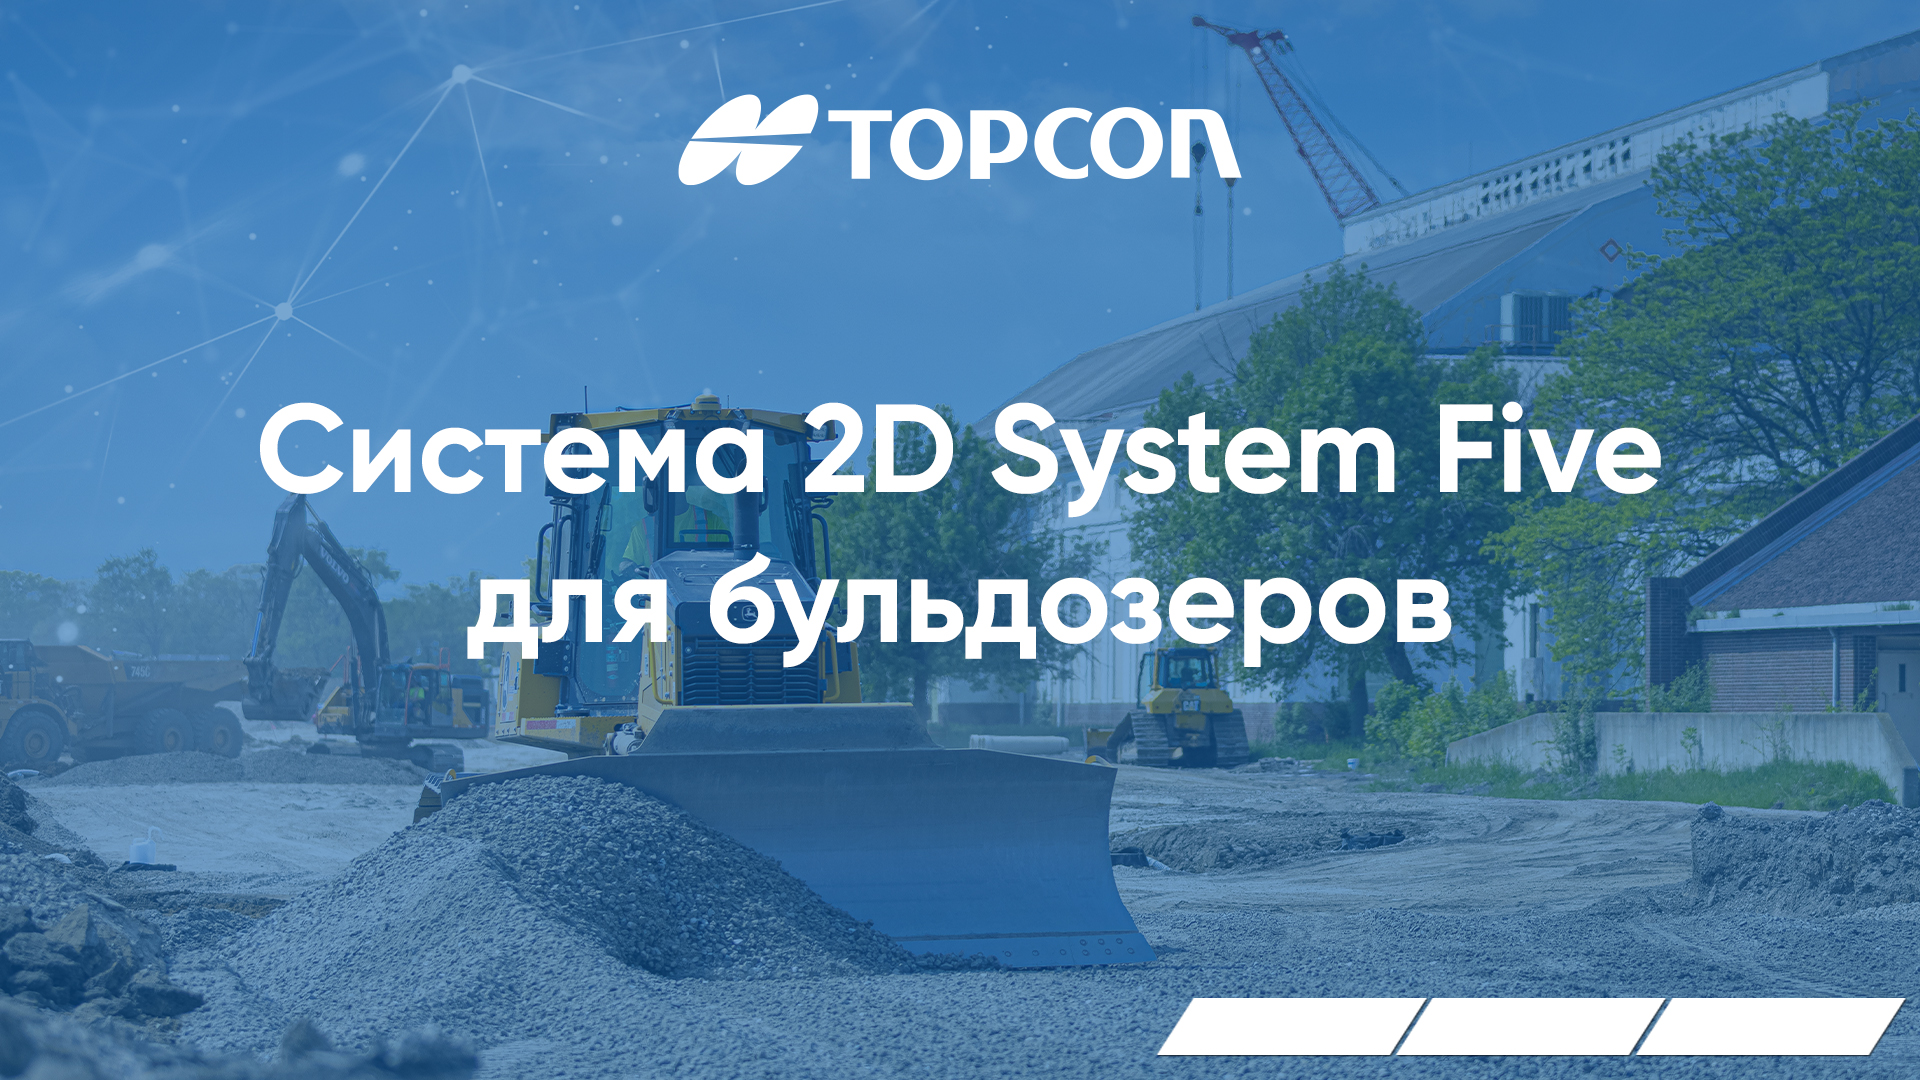 Система Topcon 2D System Five для бульдозеров